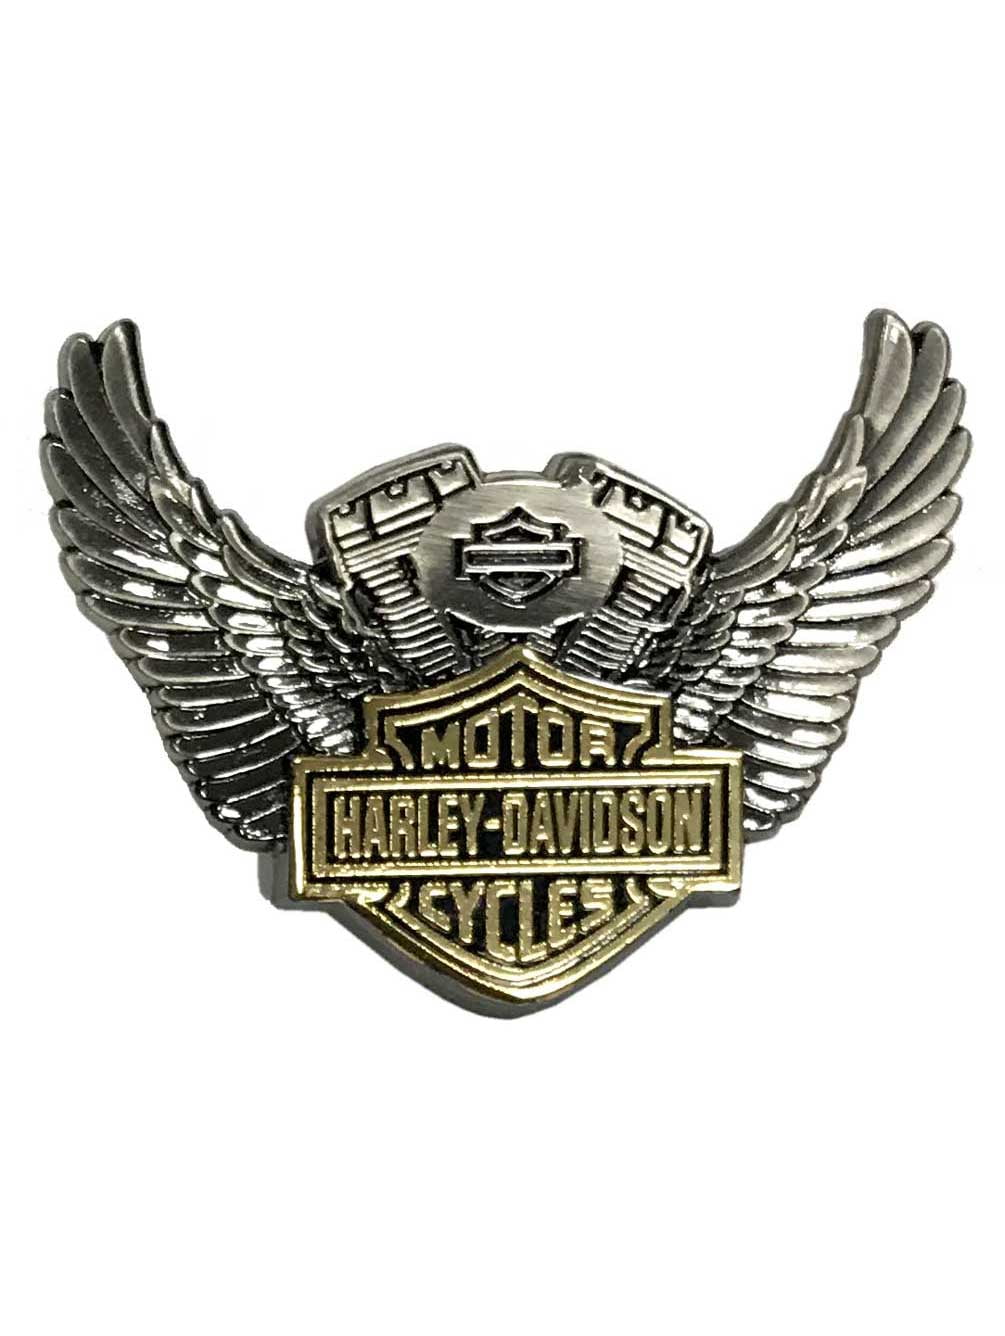 Harley Davidson® Bar & Shield Trademark Chain and Sprocket Pin Biker Chain Antiq 